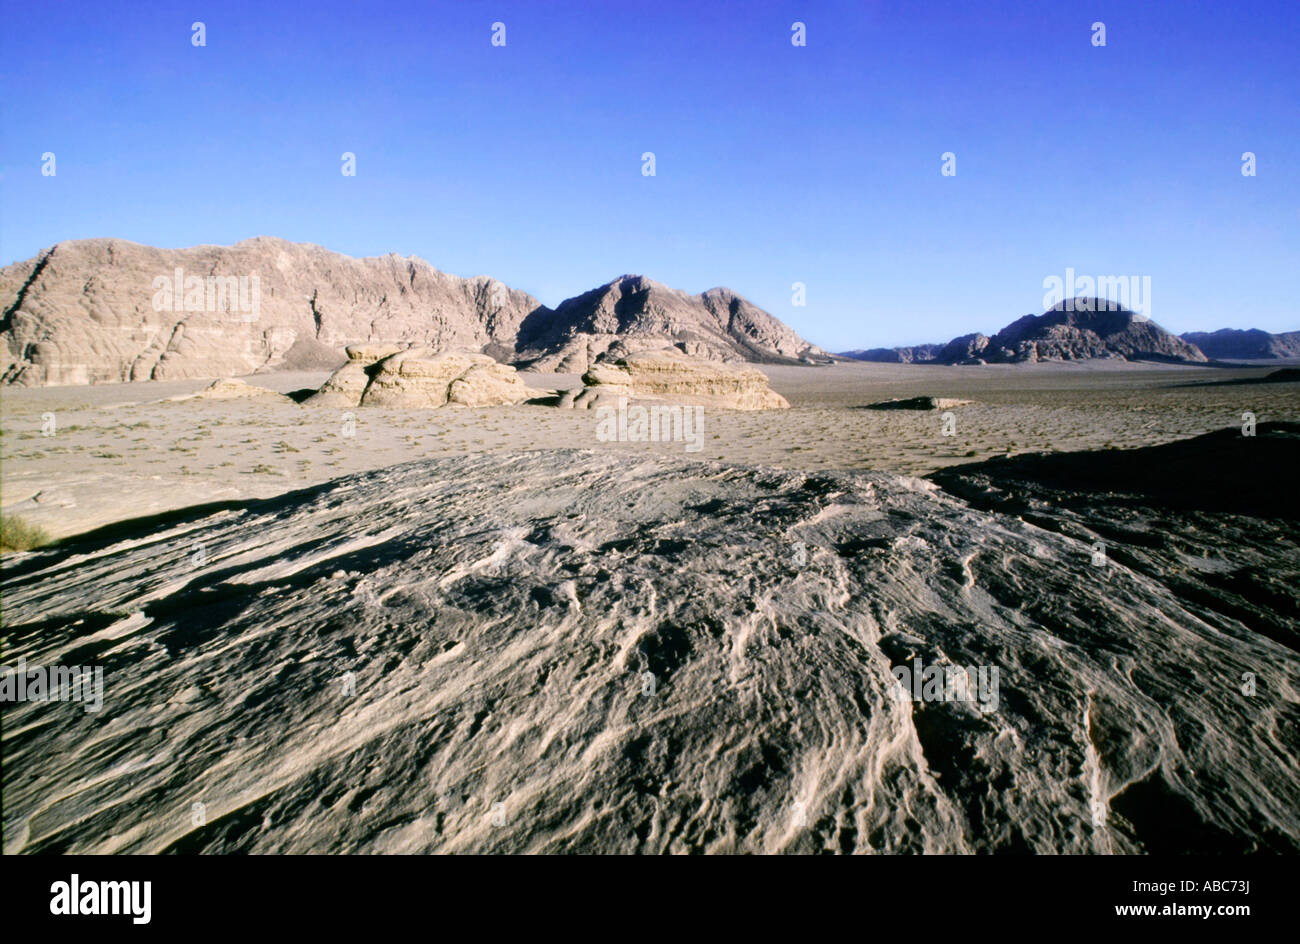 Desierto de Wadi Rum en Jordania emplazamiento fueron filmadas películas como Indiana Jones, Laurence de Arabia o Planeta rojo Foto de stock